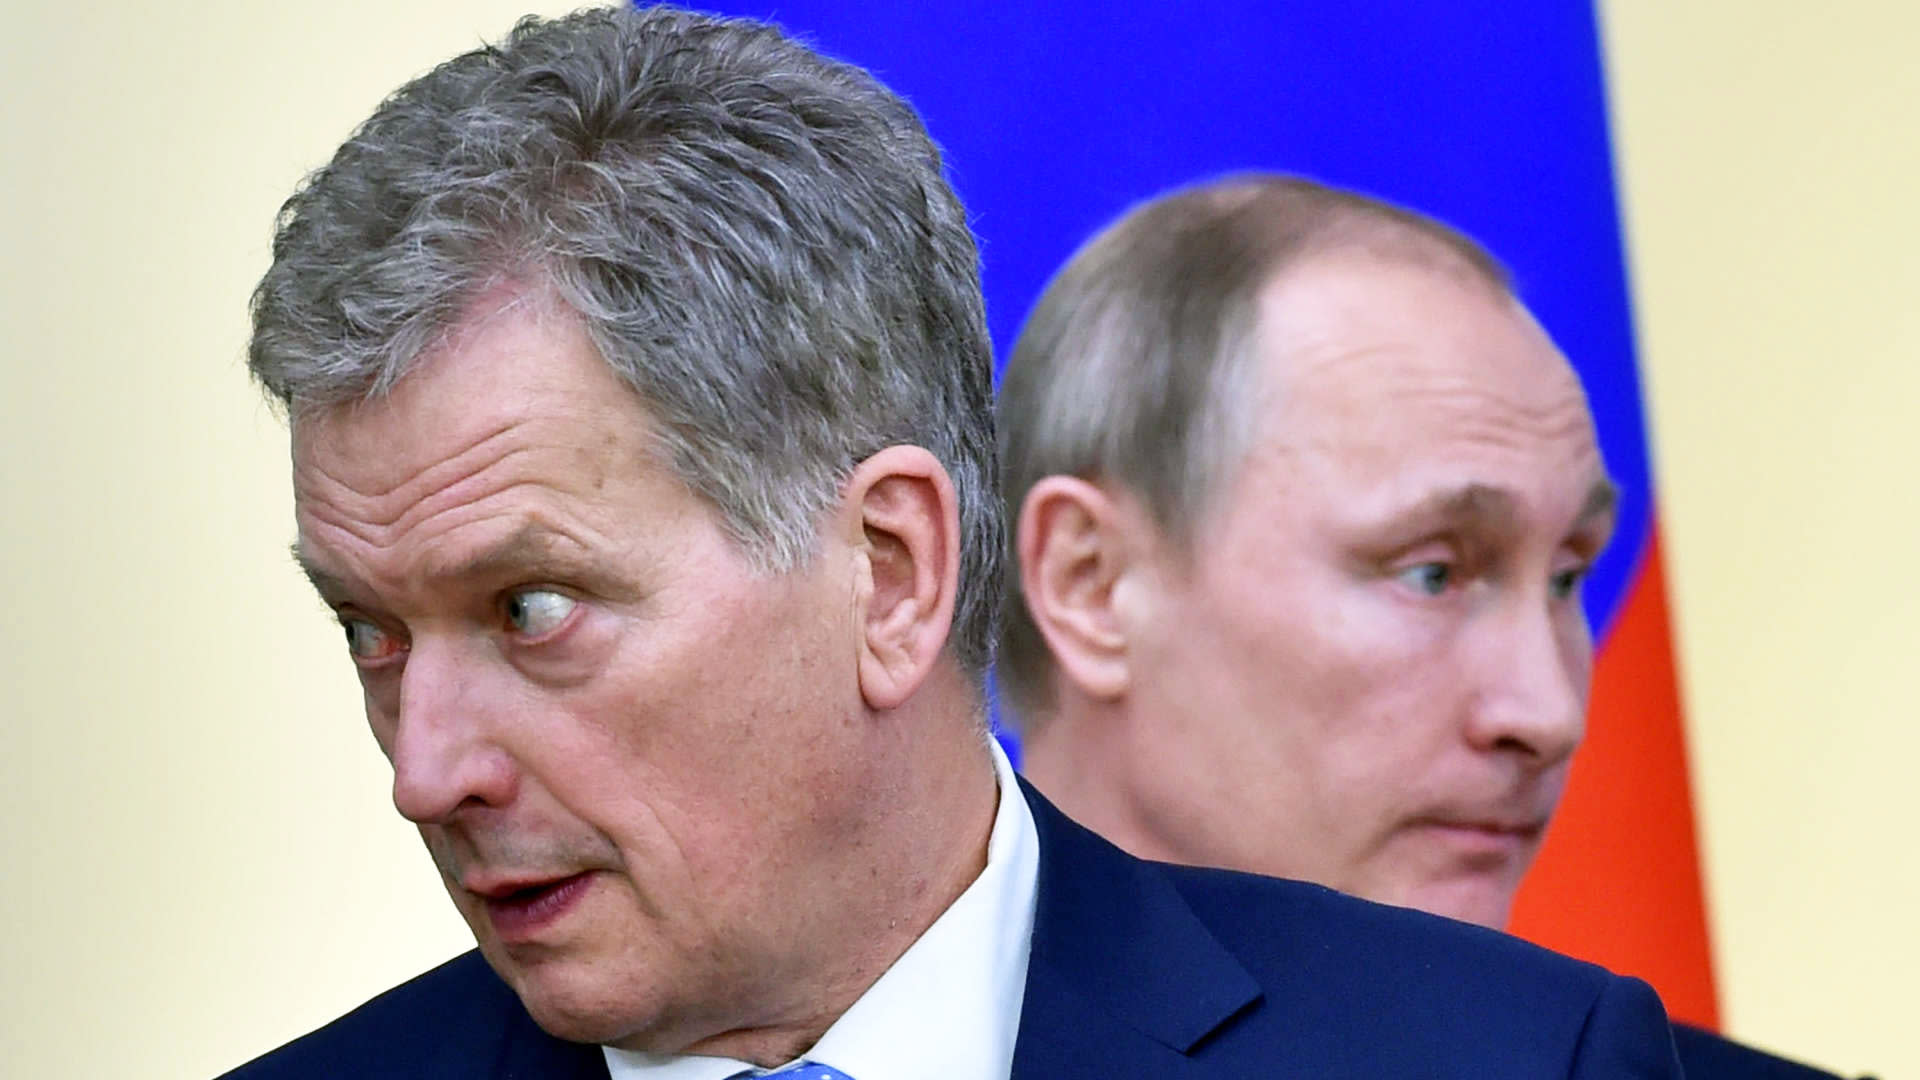 Präsident Niinistö beabsichtigt, Putin anzurufen und die veränderte Situation zu besprechen